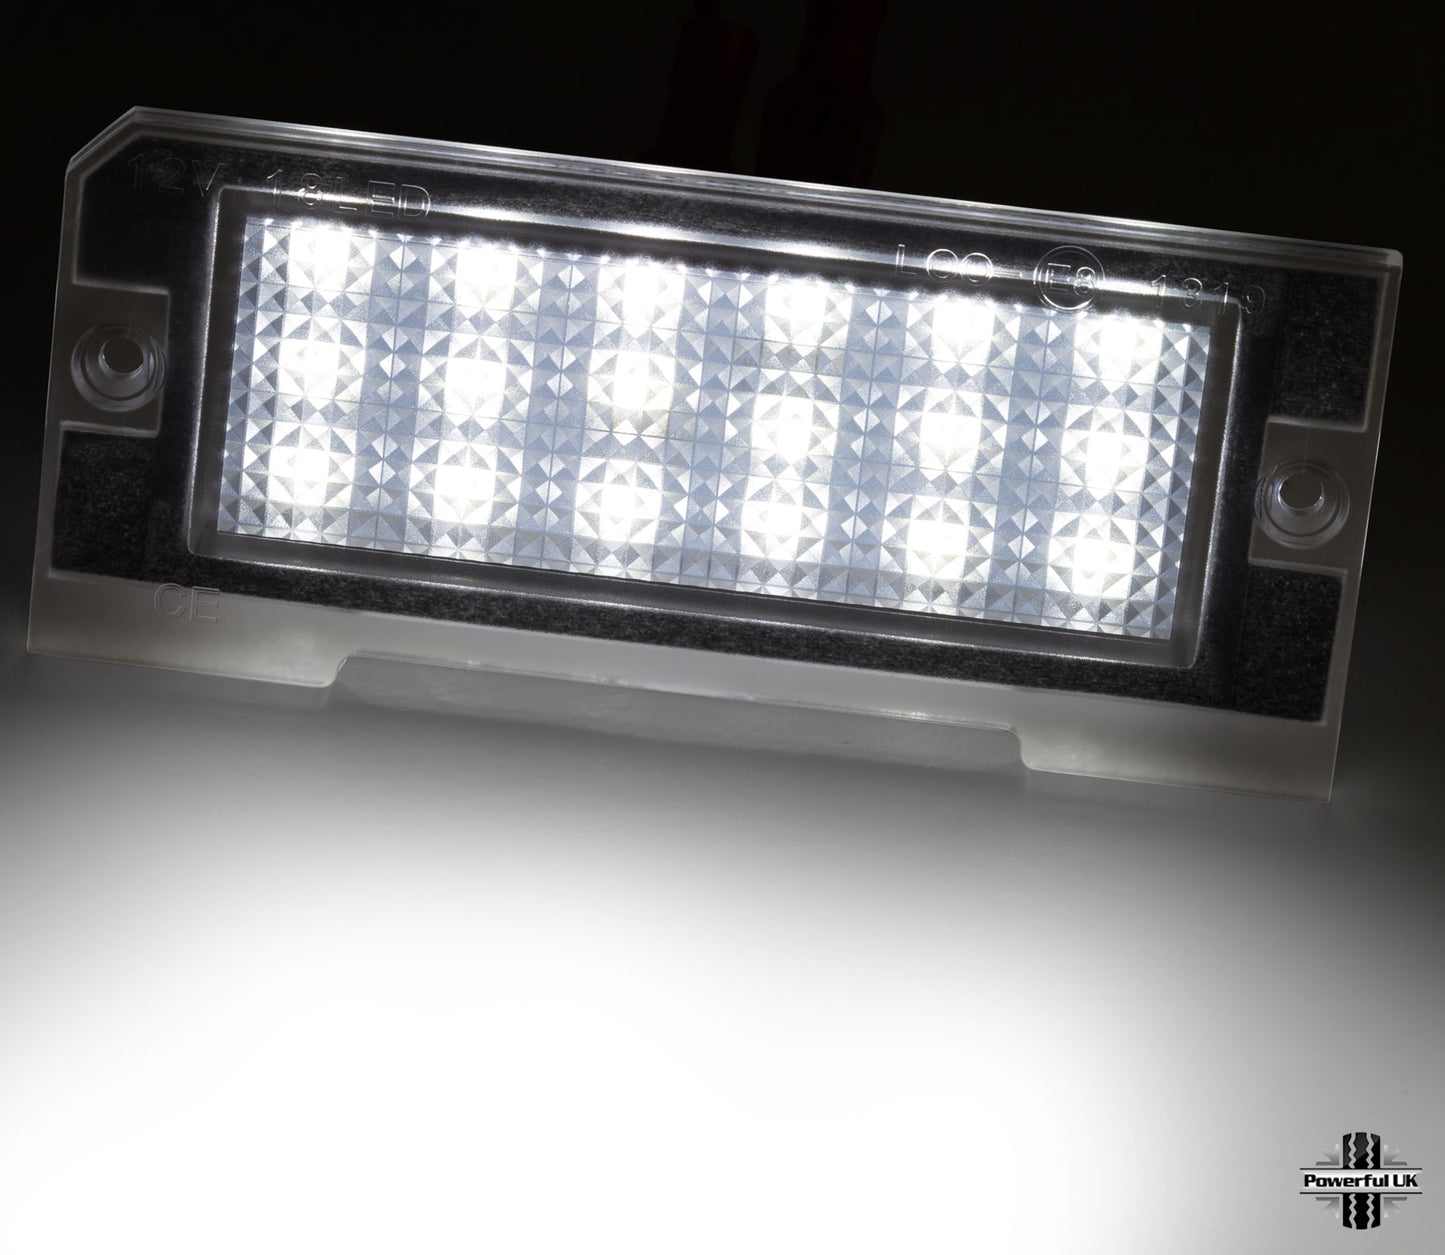 LED Rear Number plate light upgrade for Land Rover Freelander 1